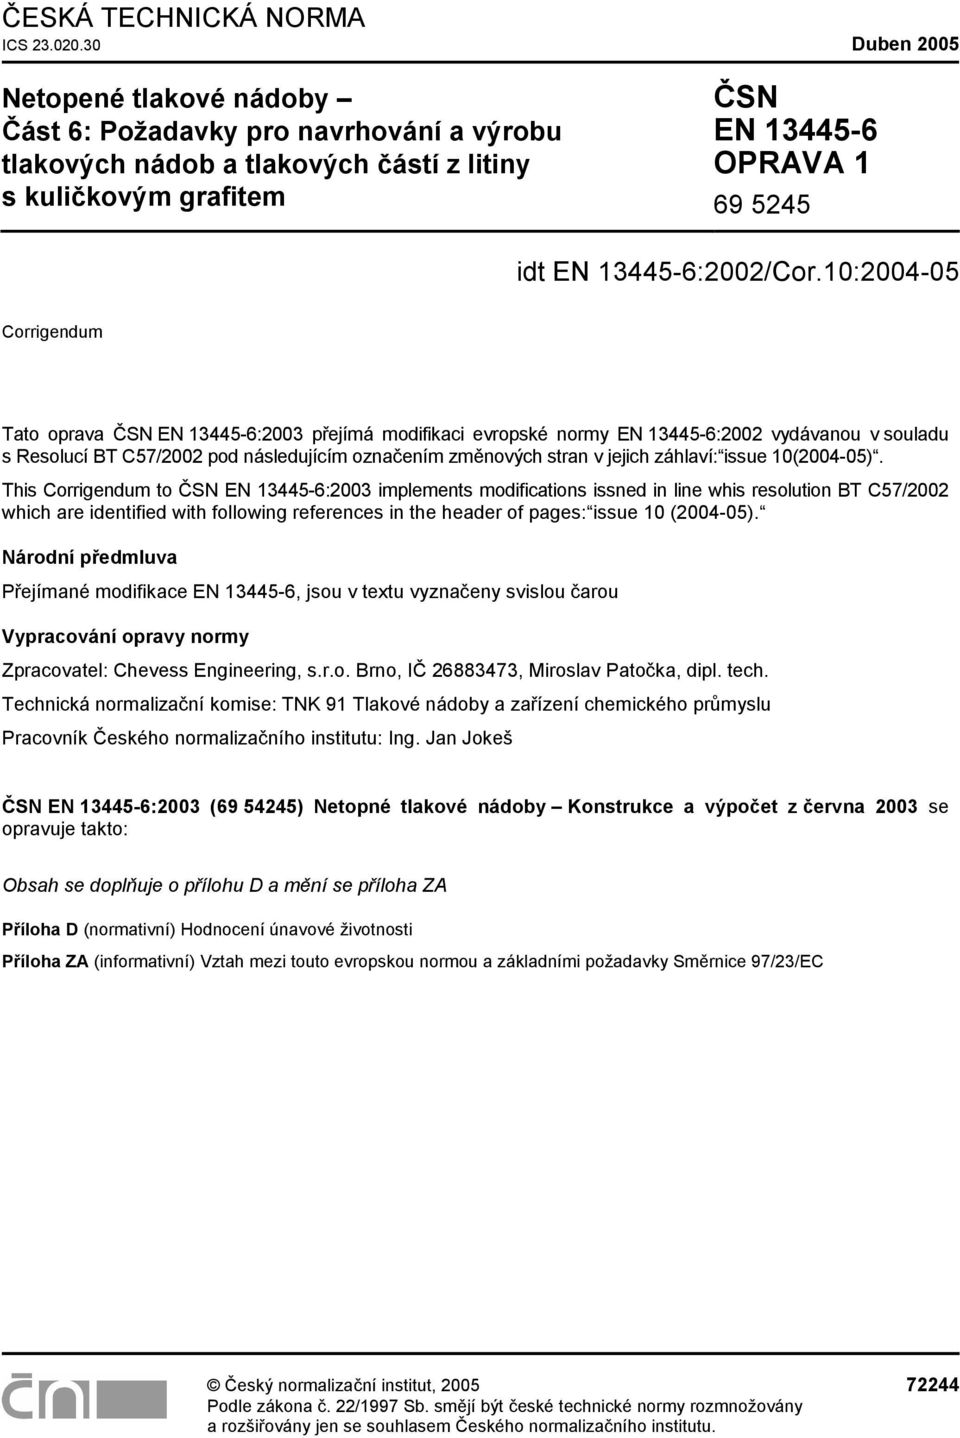 10:2004-05 Corrigendum Tato oprava ČSN EN 13445-6:2003 přejímá modiikaci evropské normy EN 13445-6:2002 vydávanou v souladu s Resolucí BT C57/2002 pod následujícím označením změnových stran v jejich